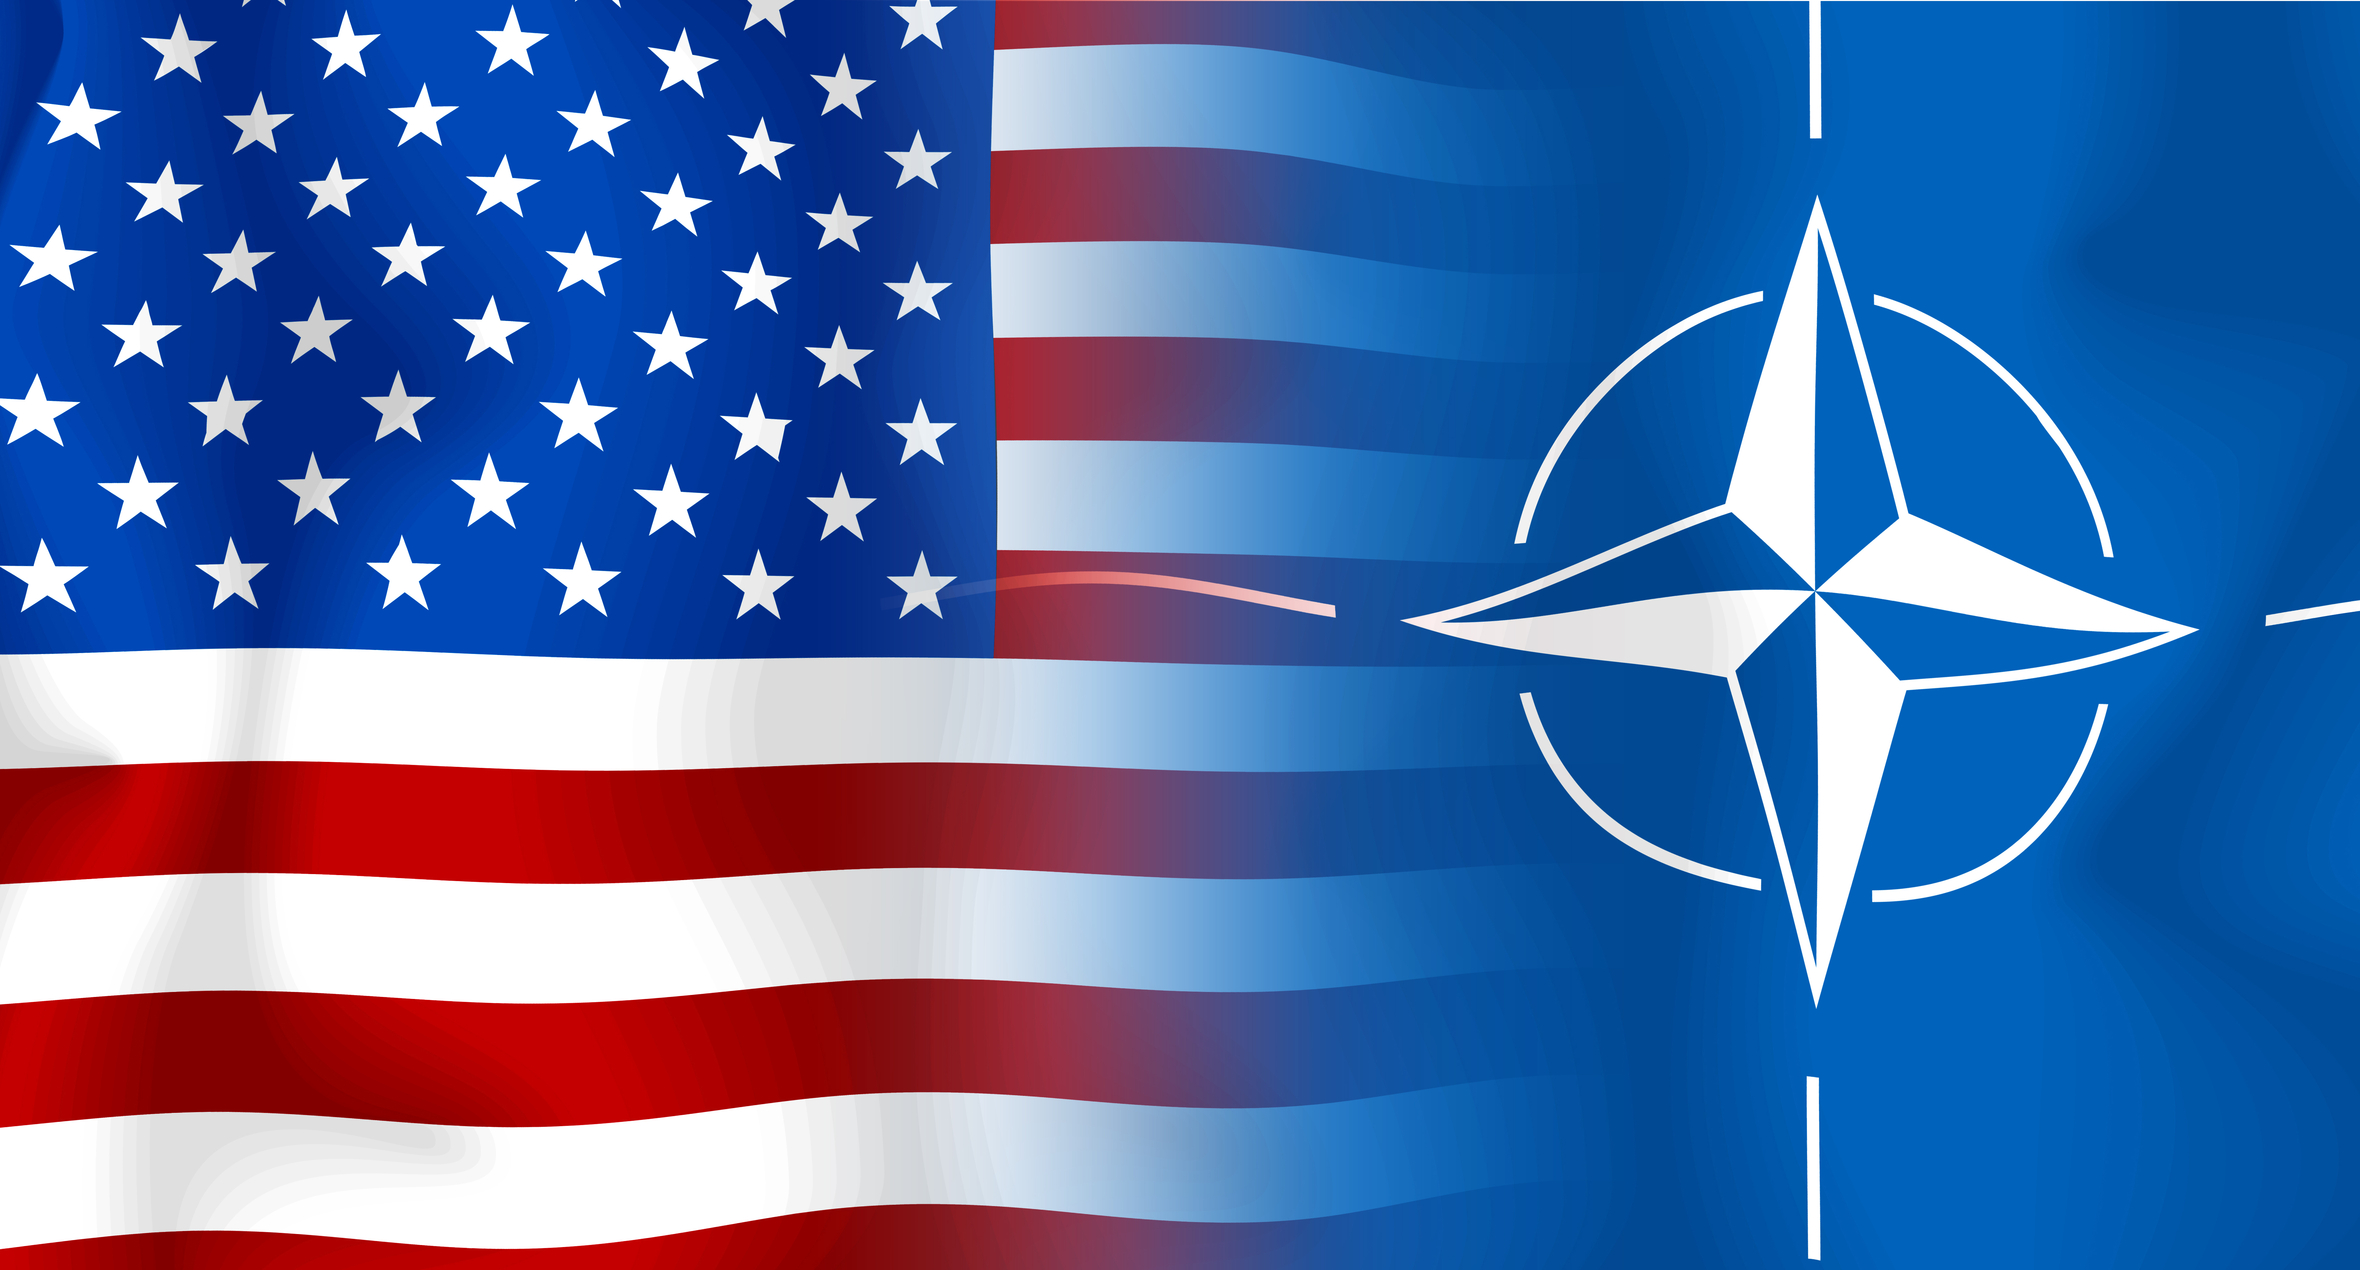 US & NATO